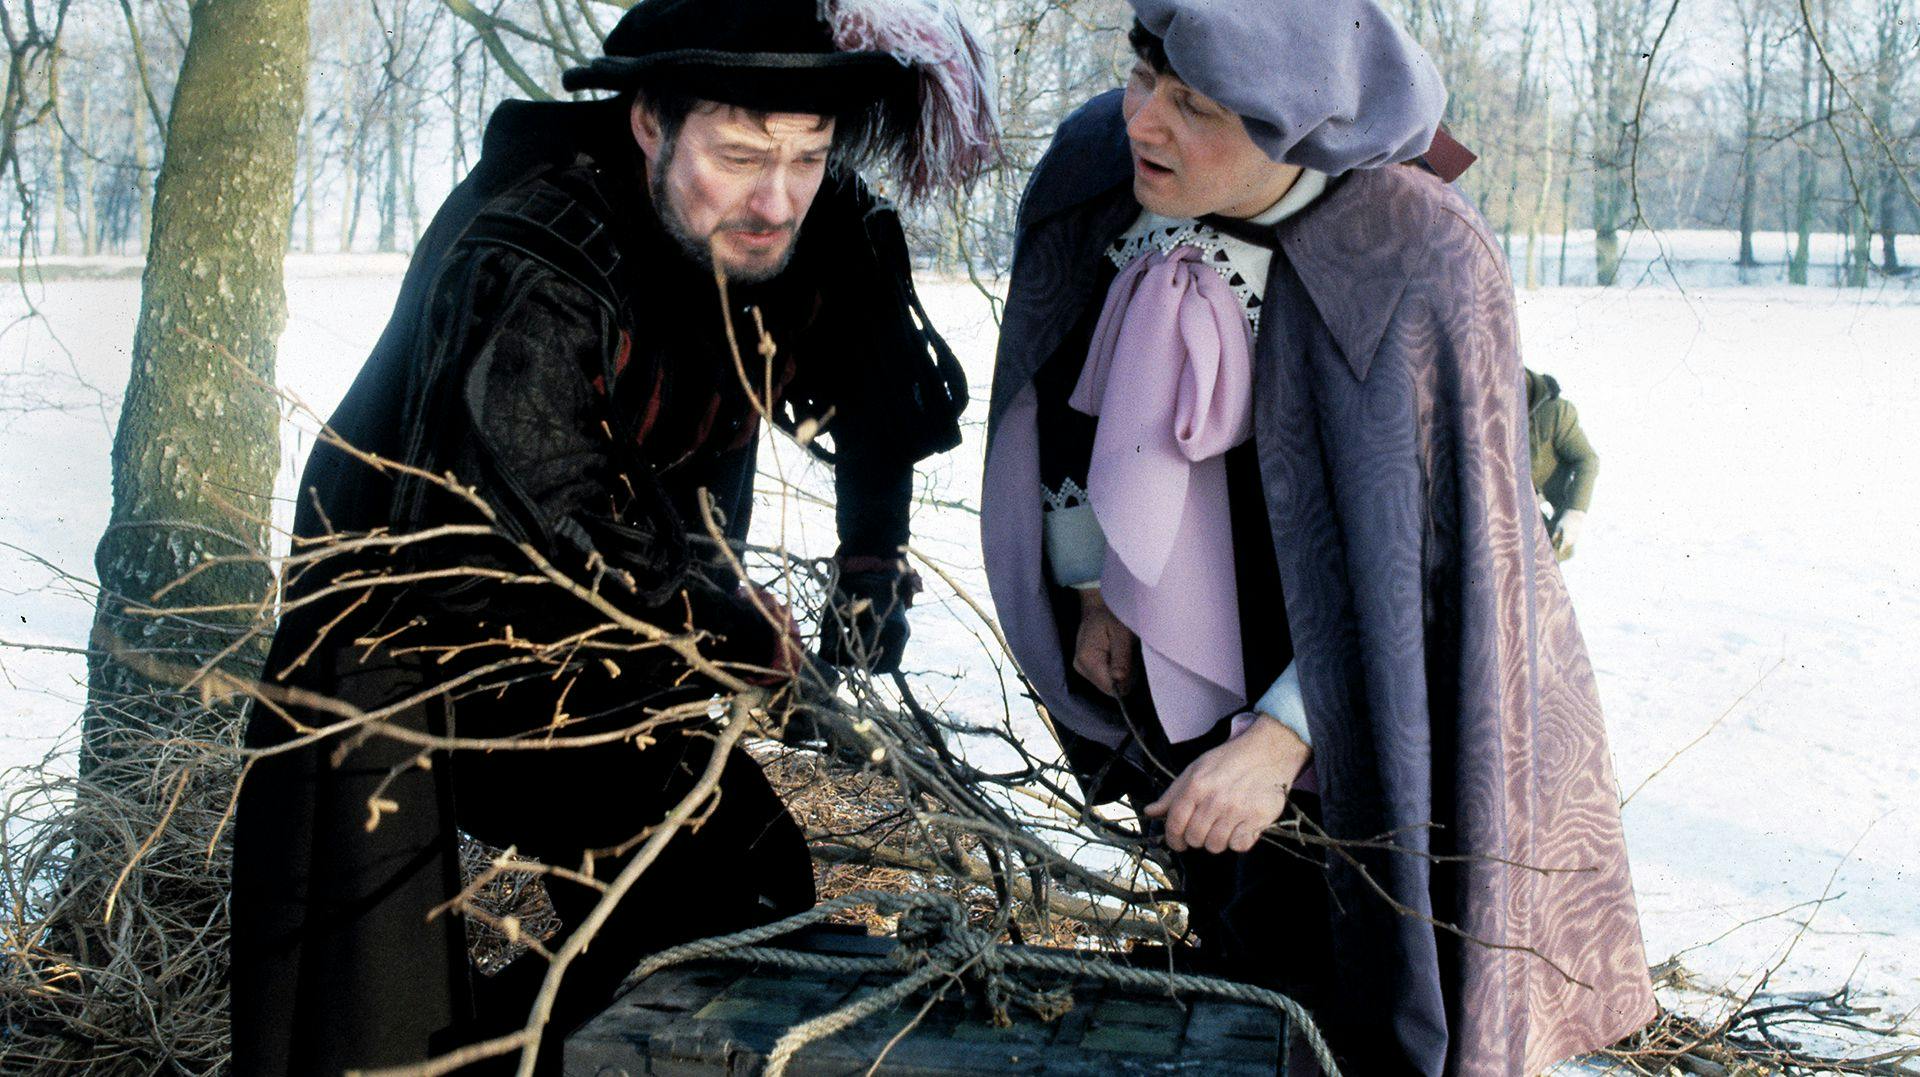 Rabsenfuchs (til venstre) spillet af Waage Sandø og Junker Juchs spillet af Kim Veisgaard var den ultimative skurkeduo i "Jul på Slottet", som for første gang blev sendt på DR tilbage i 1986.